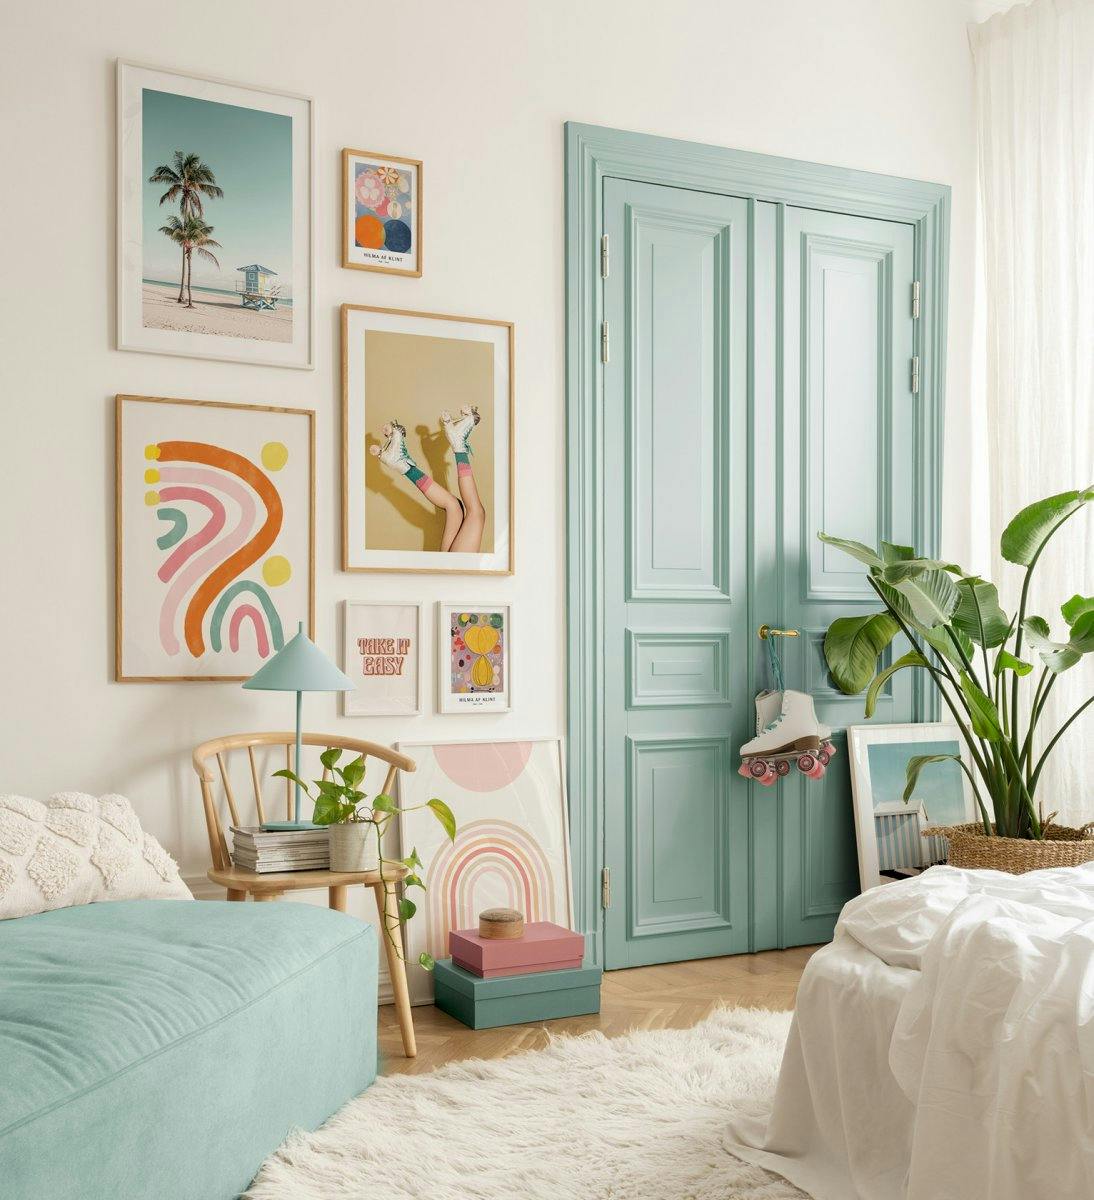 Fényképekből és idézetekből álló nyomatok játékos színekben, hogy retró jellegű hangulatot adjon a hálószobának vagy a nappalina